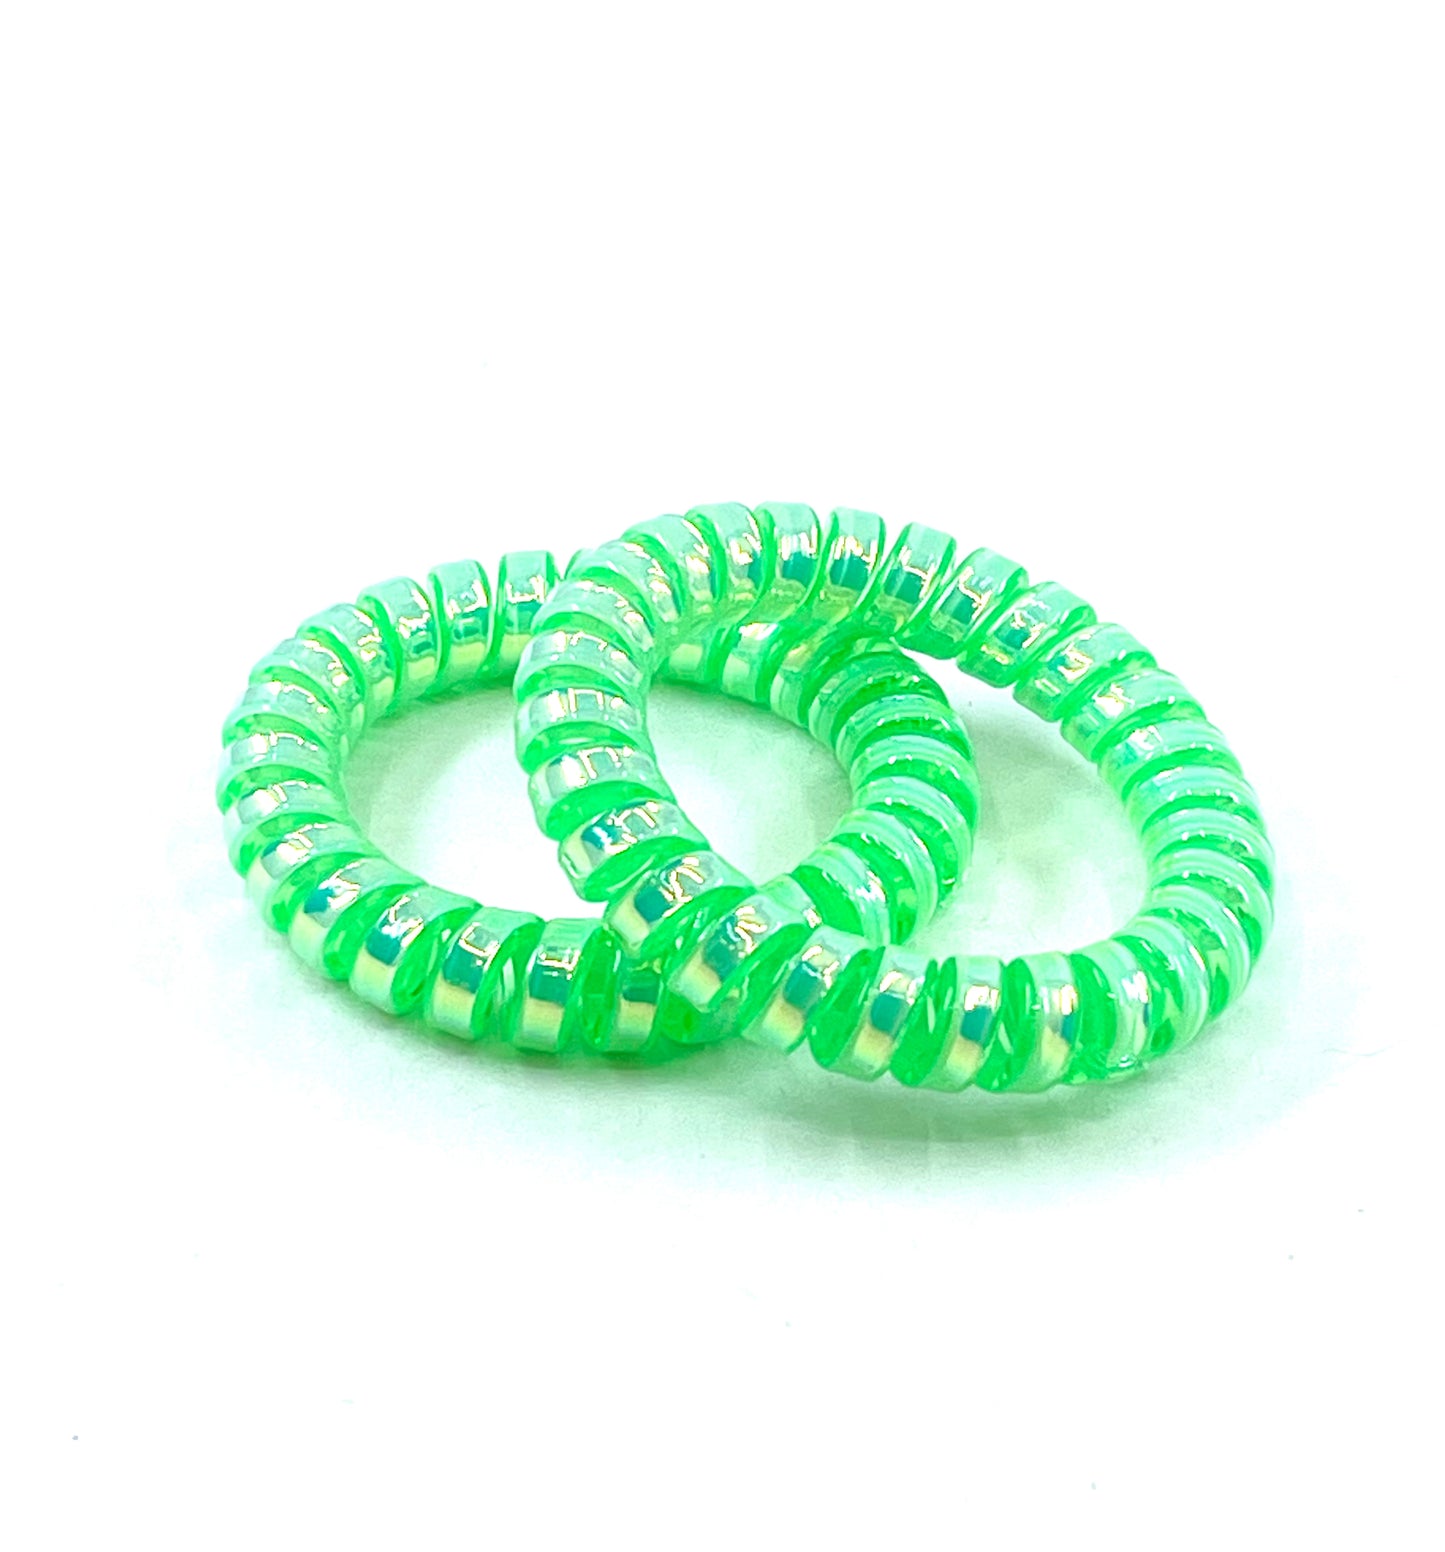 Large Spiral Hair Ties - Bright green metallic